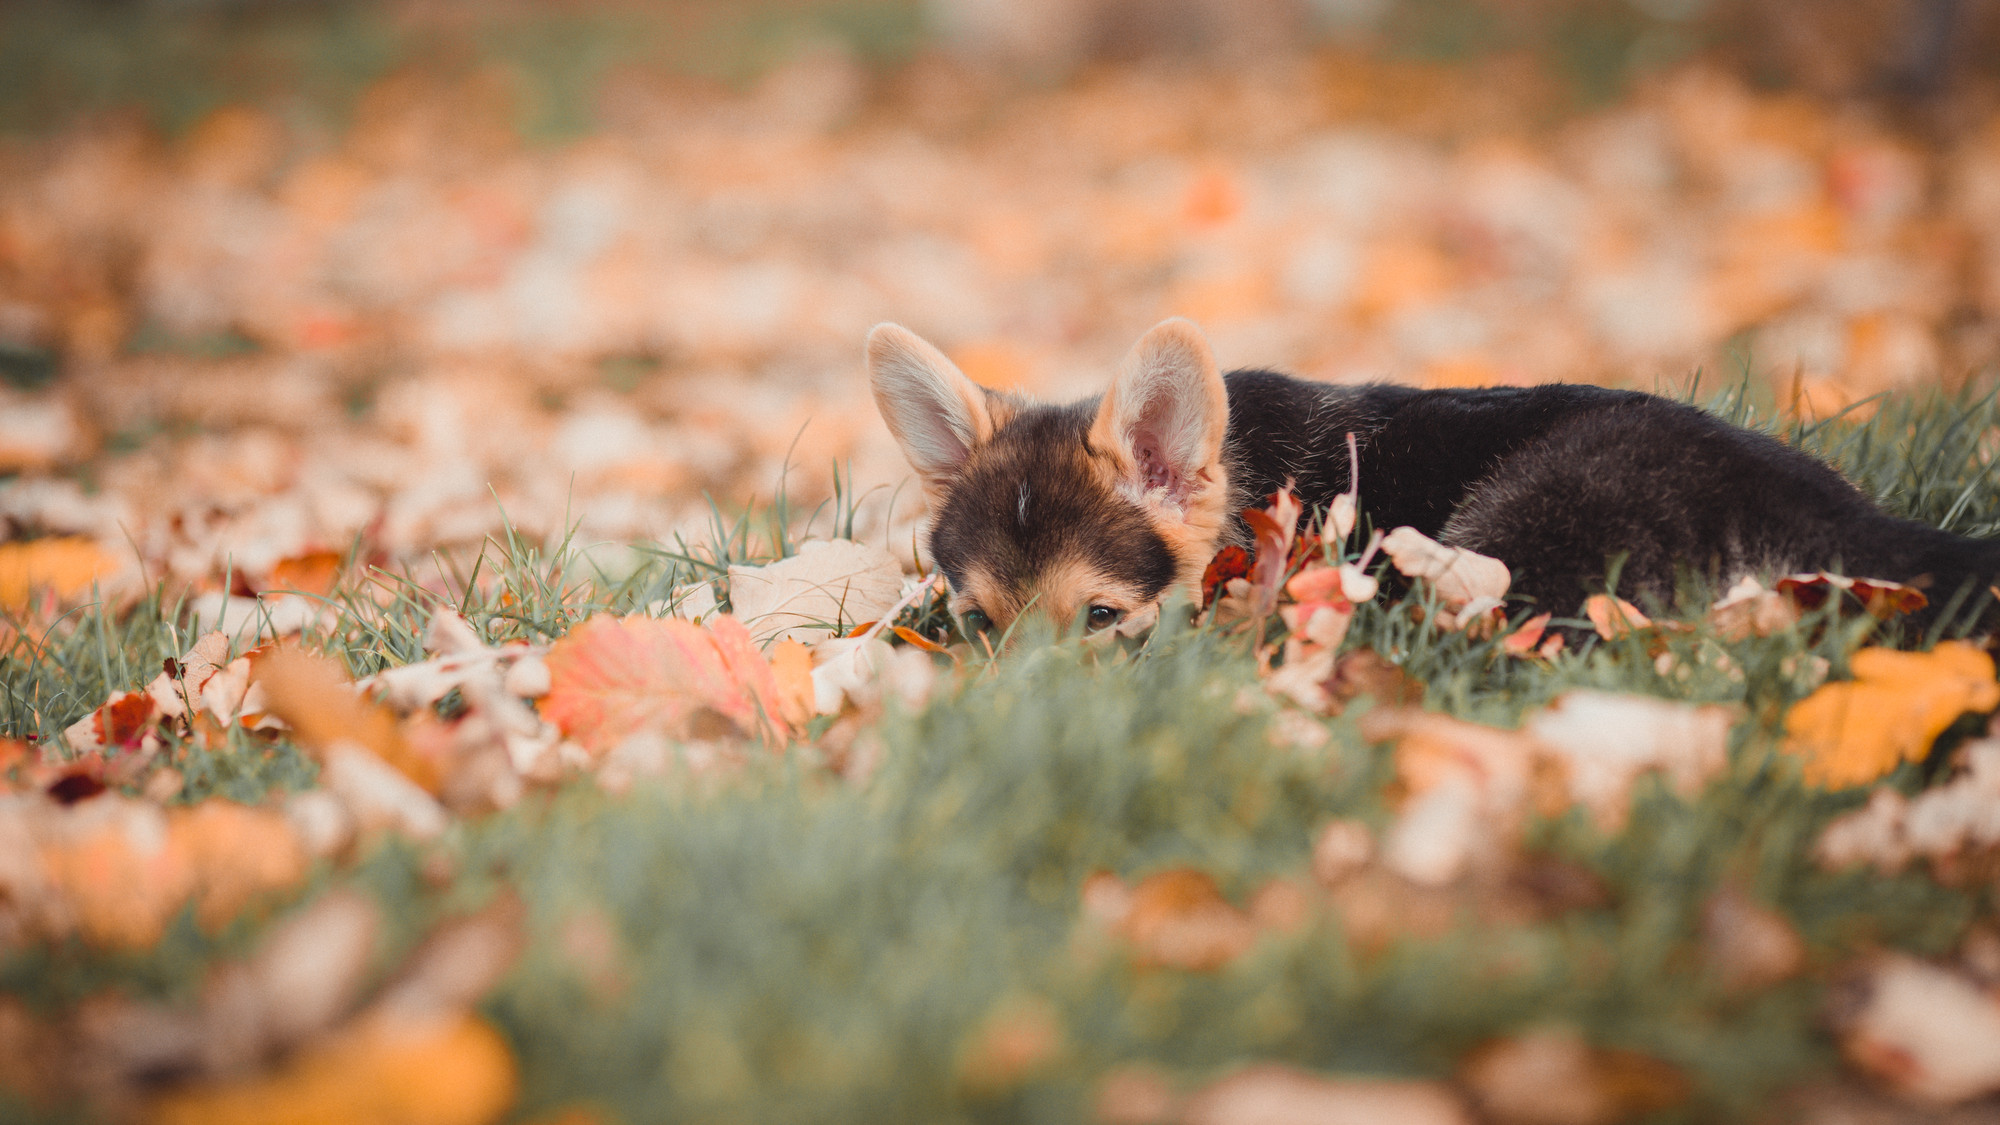 outdoor-dog-photography-corgi-puppy-06